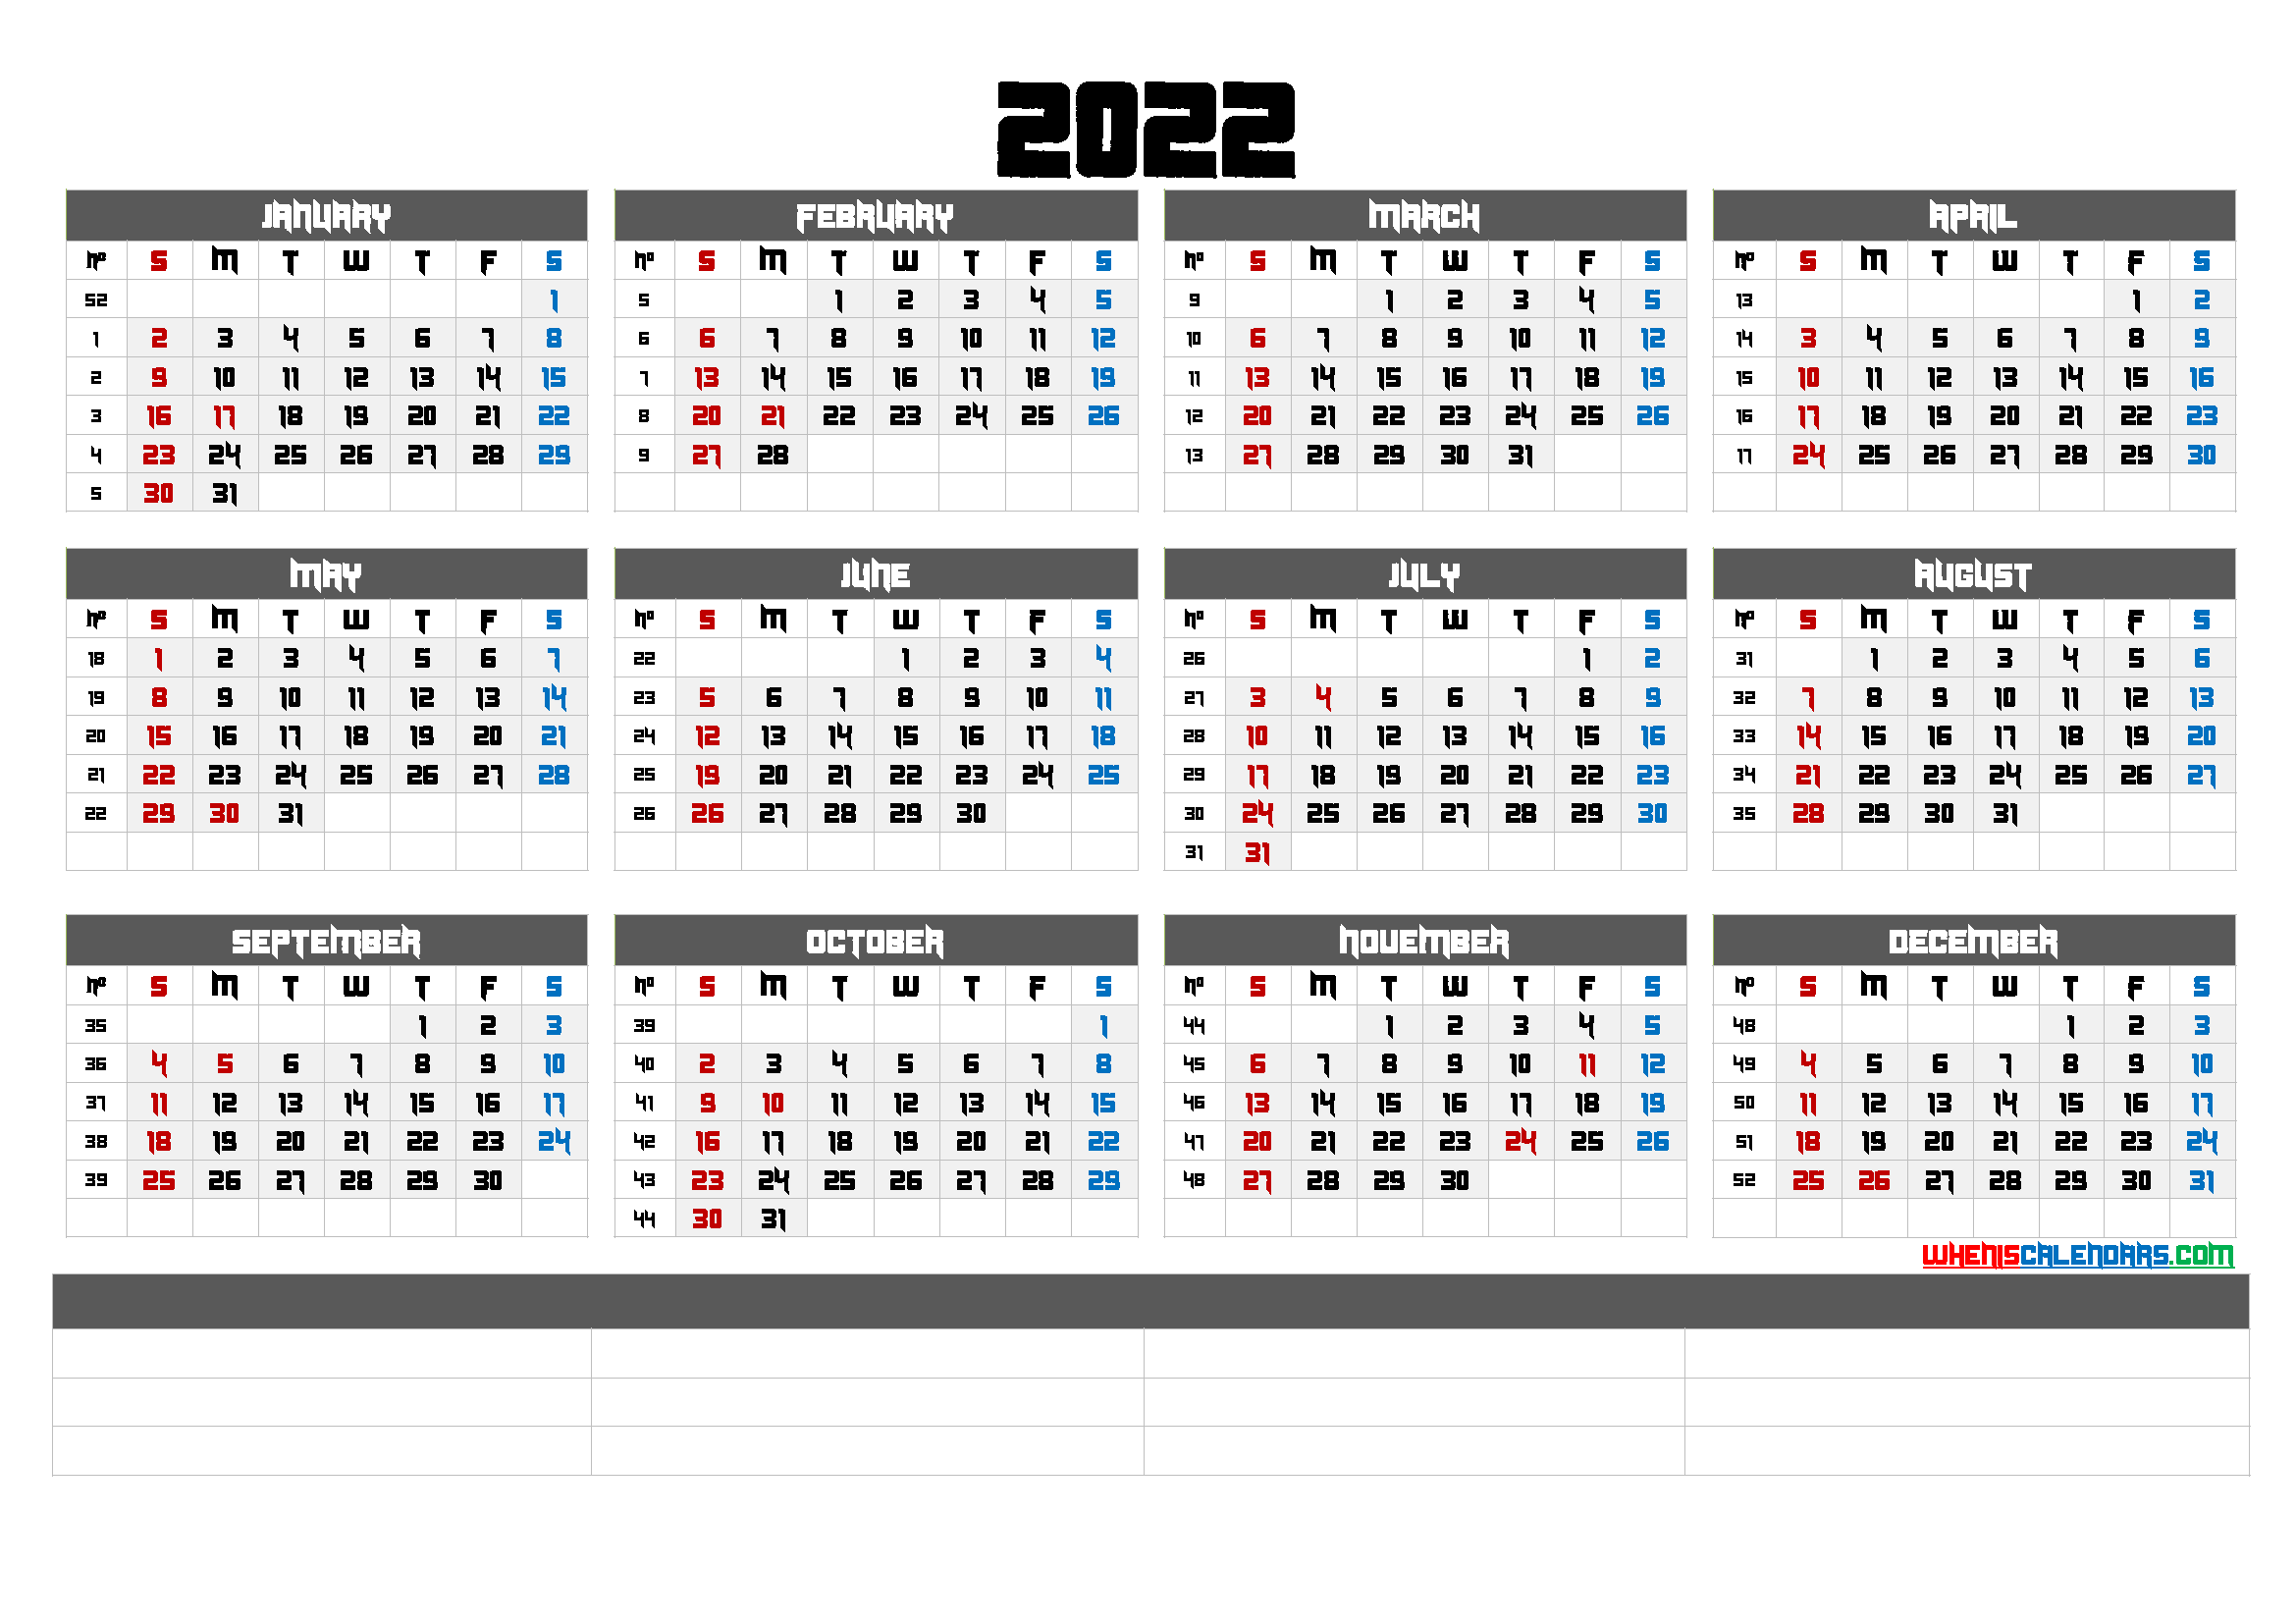 2022 printable calendar by month